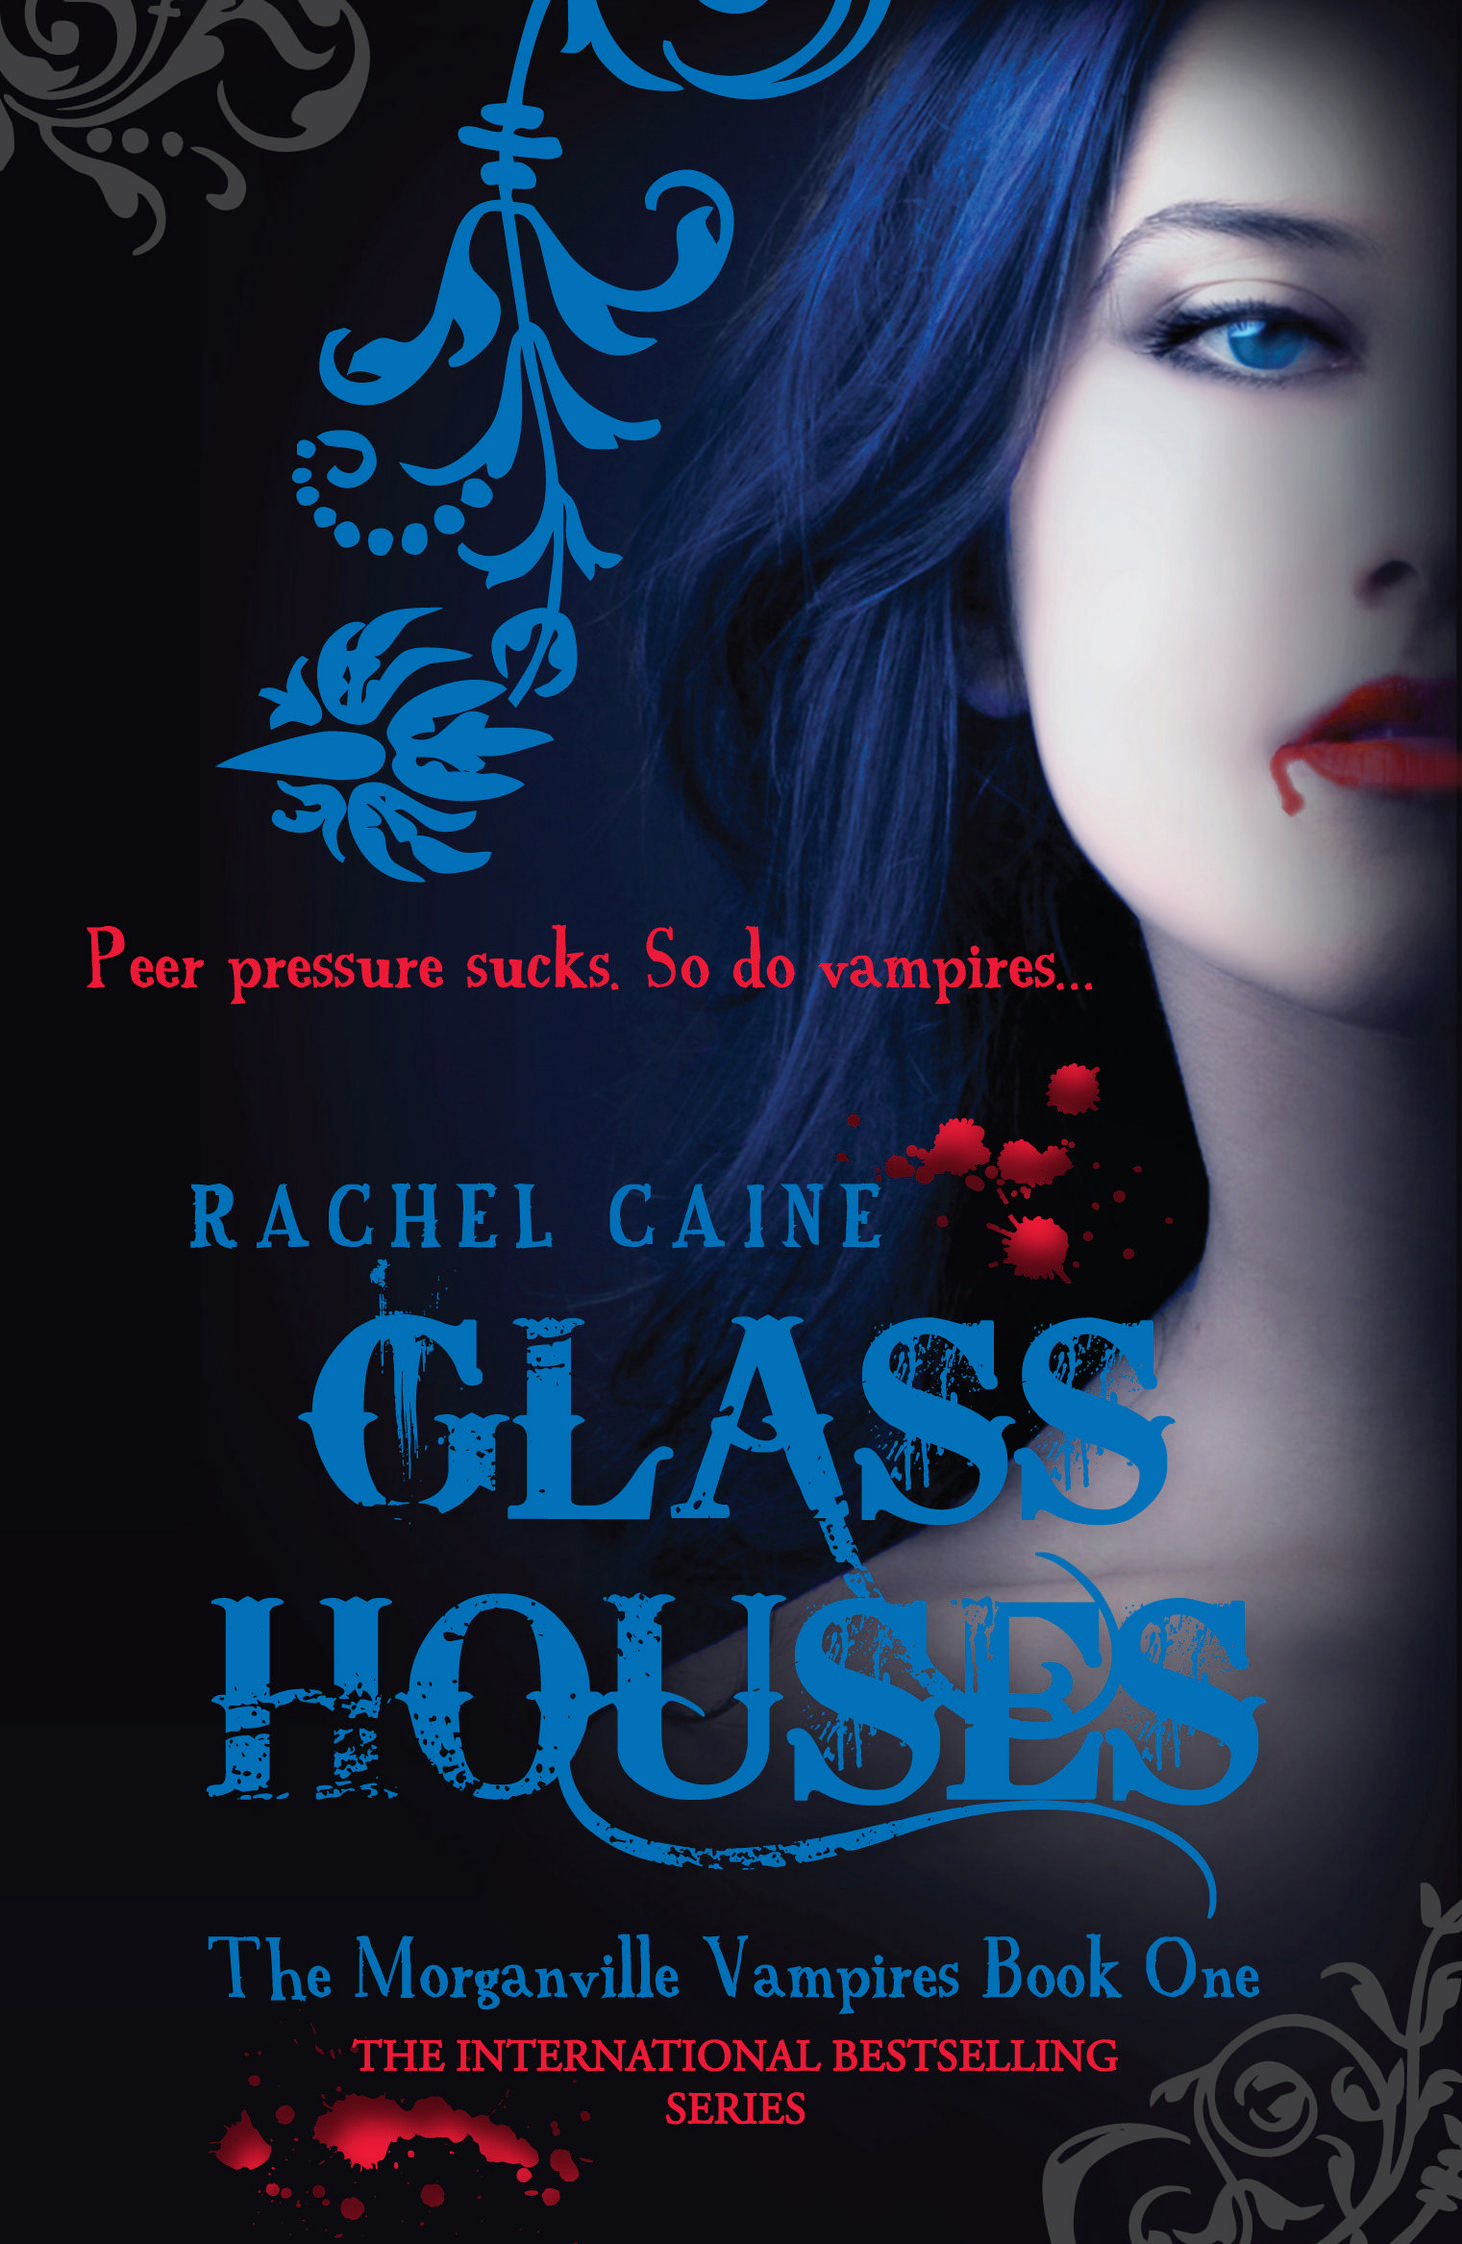 glass houses by rachel caine